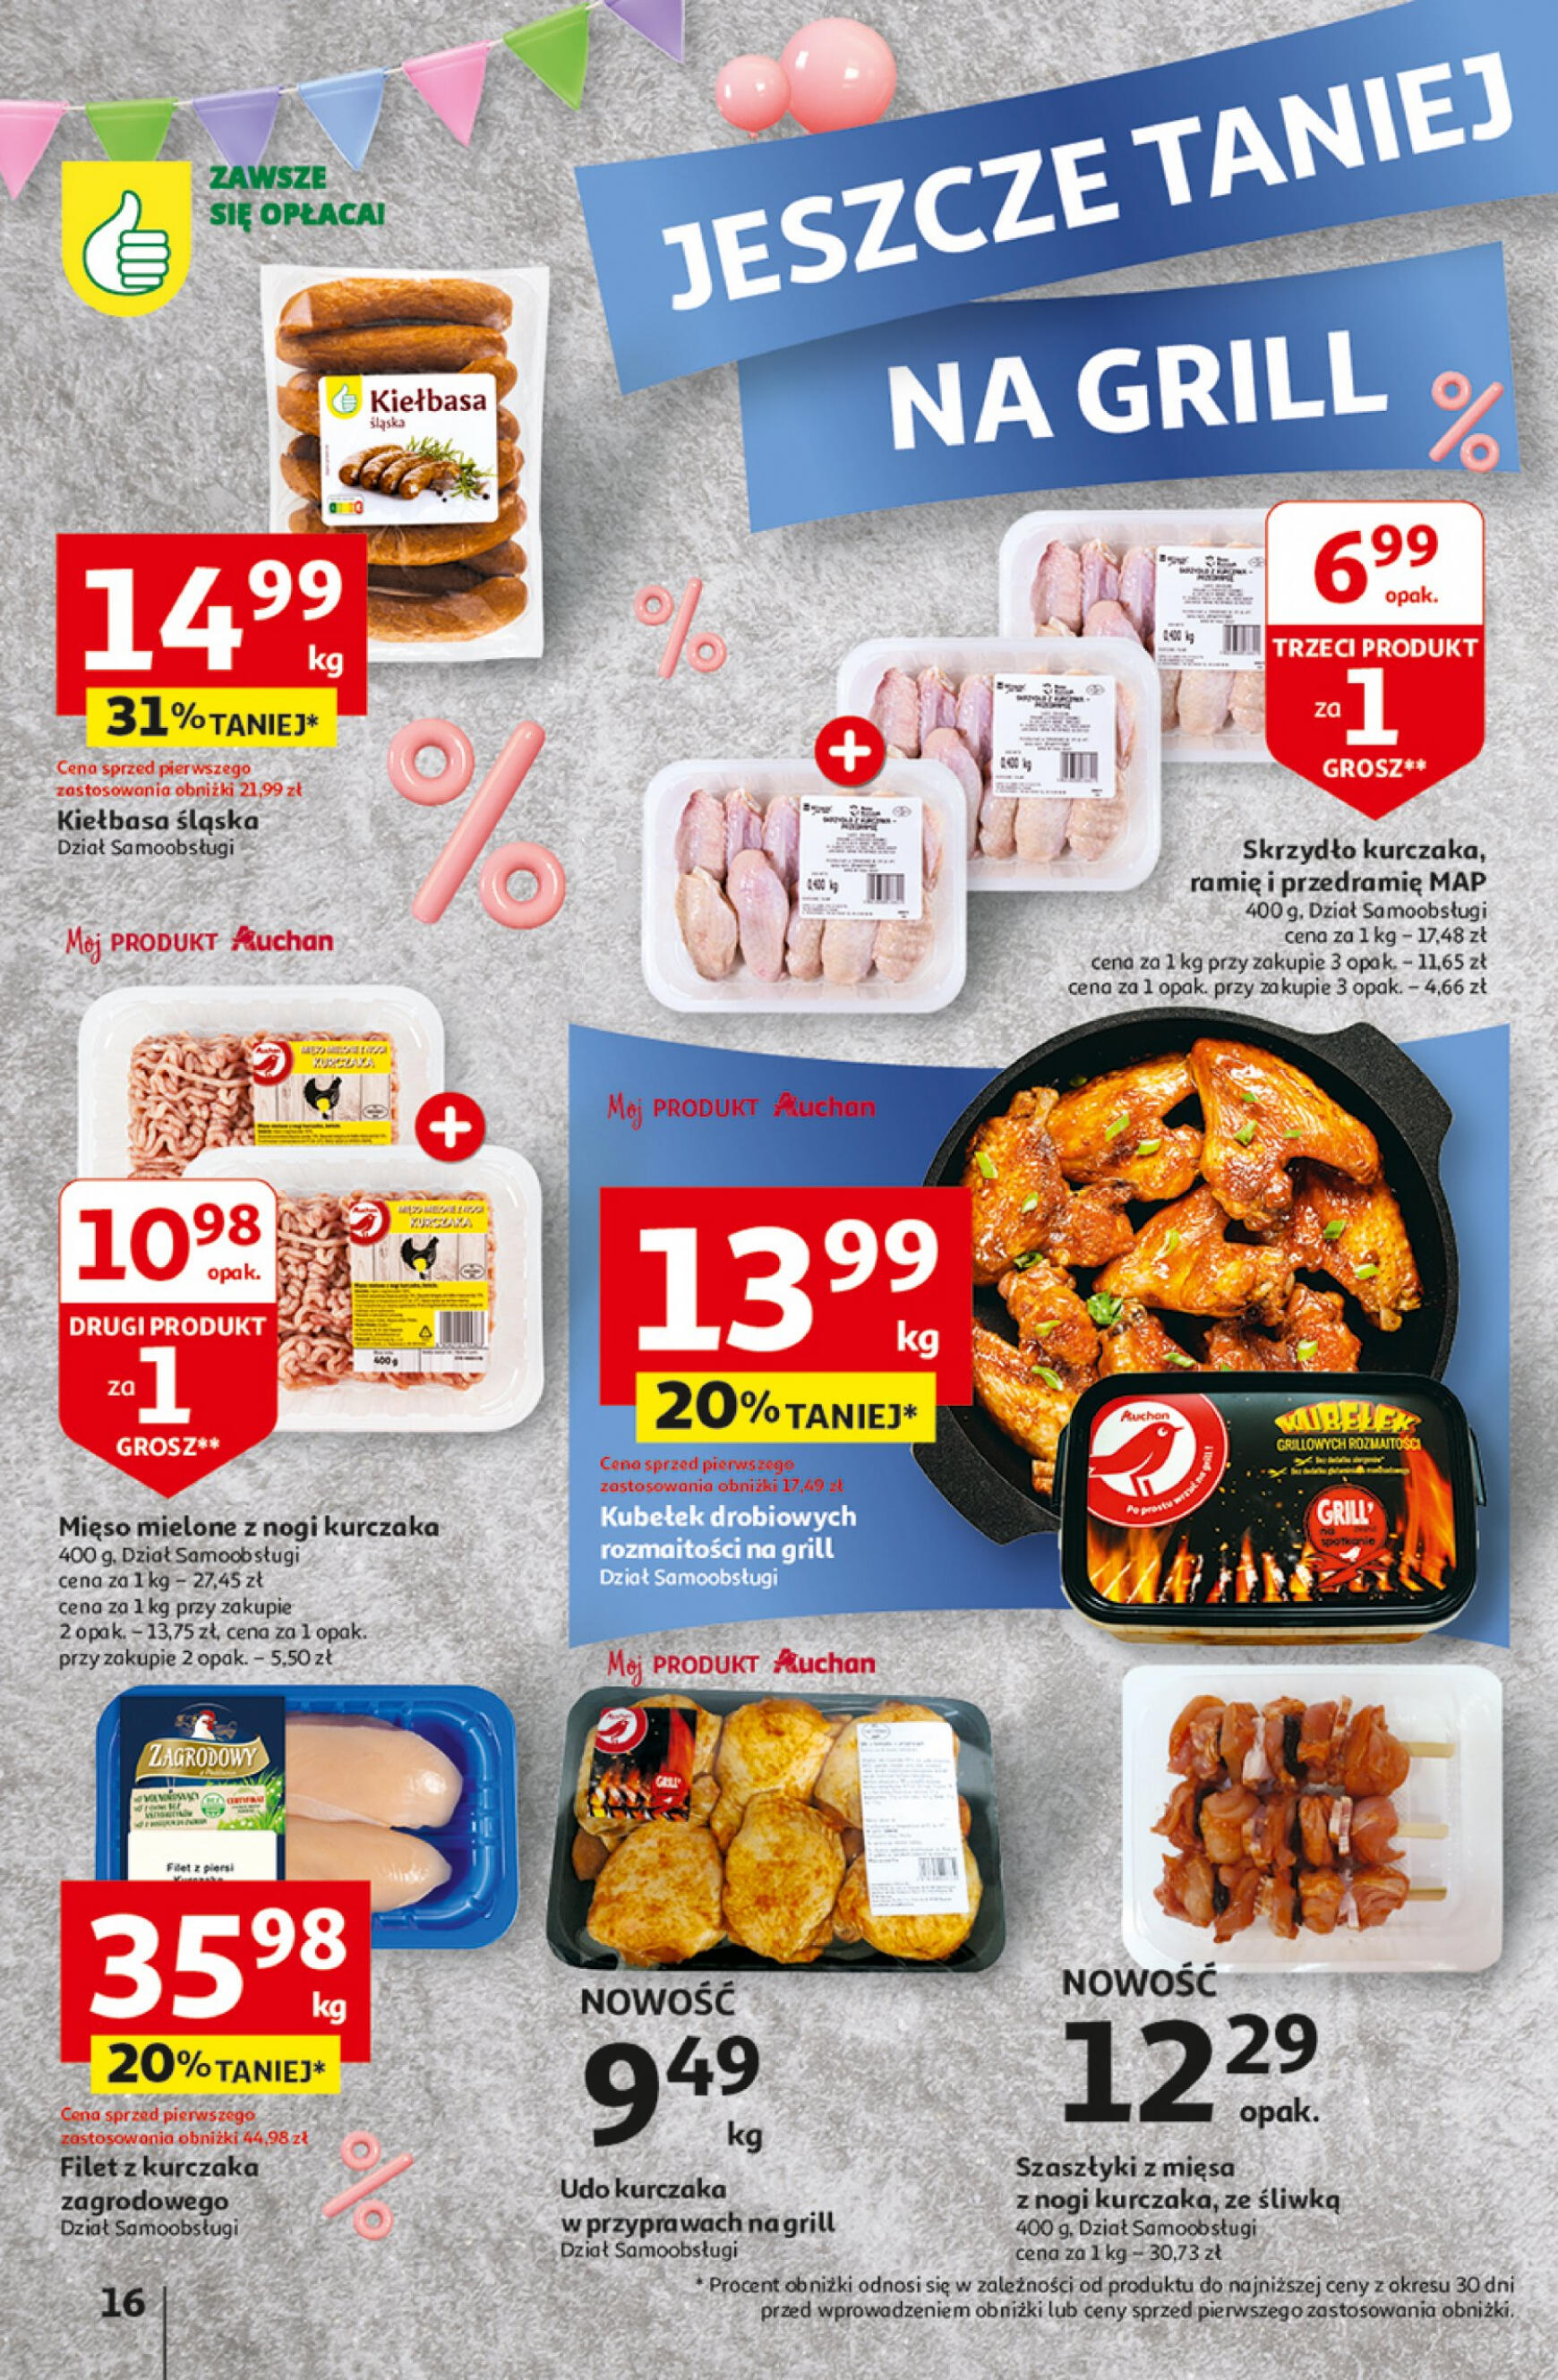 auchan - Hipermarket Auchan - Gazetka Jeszcze taniej na urodziny gazetka aktualna ważna od 25.04. - 30.04. - page: 16